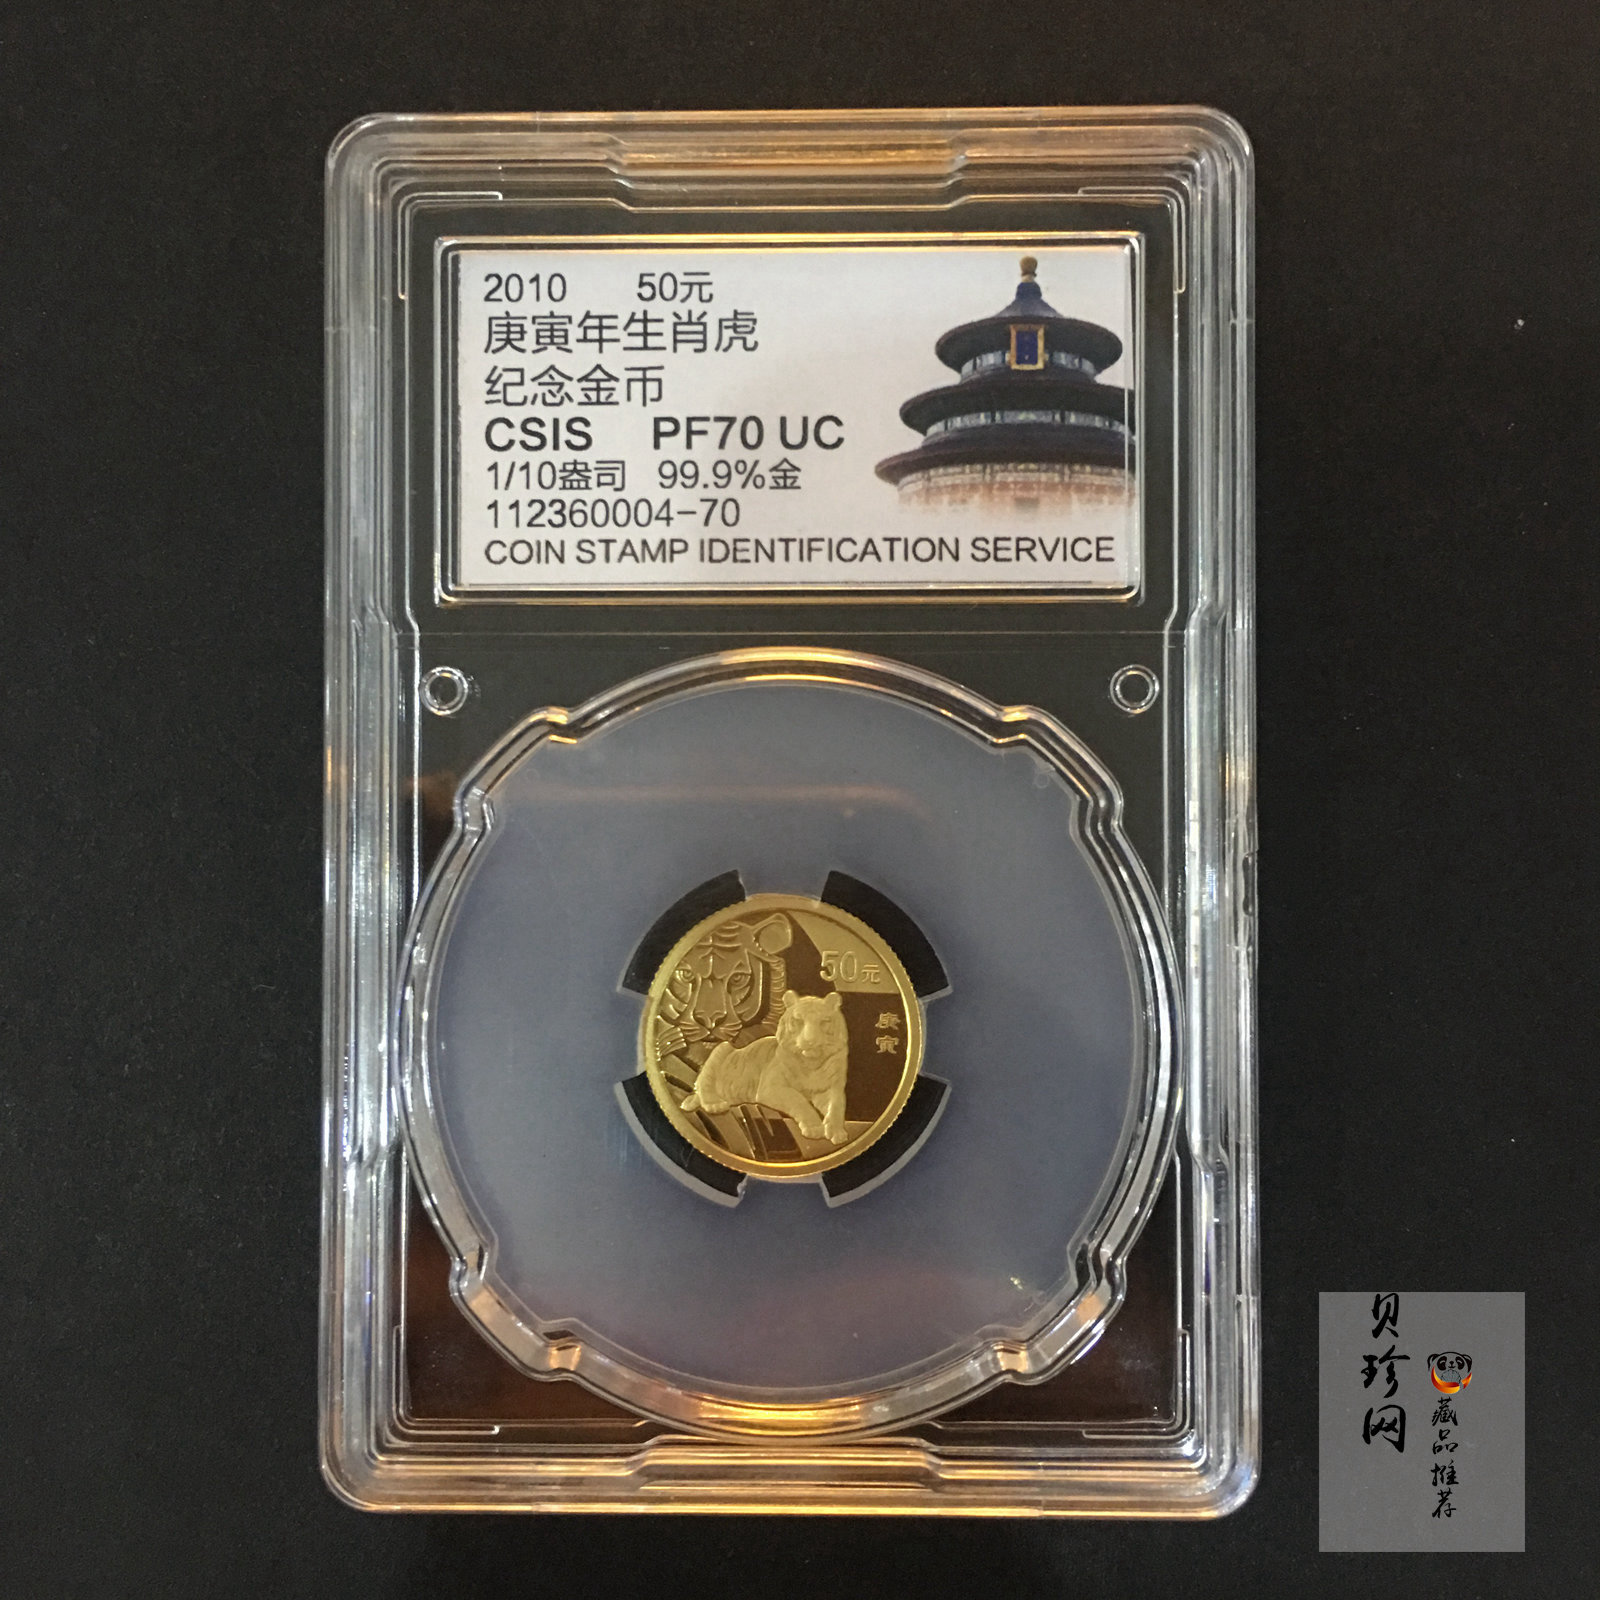 【090801】2010年庚寅虎年生肖1/10盎司精制金币